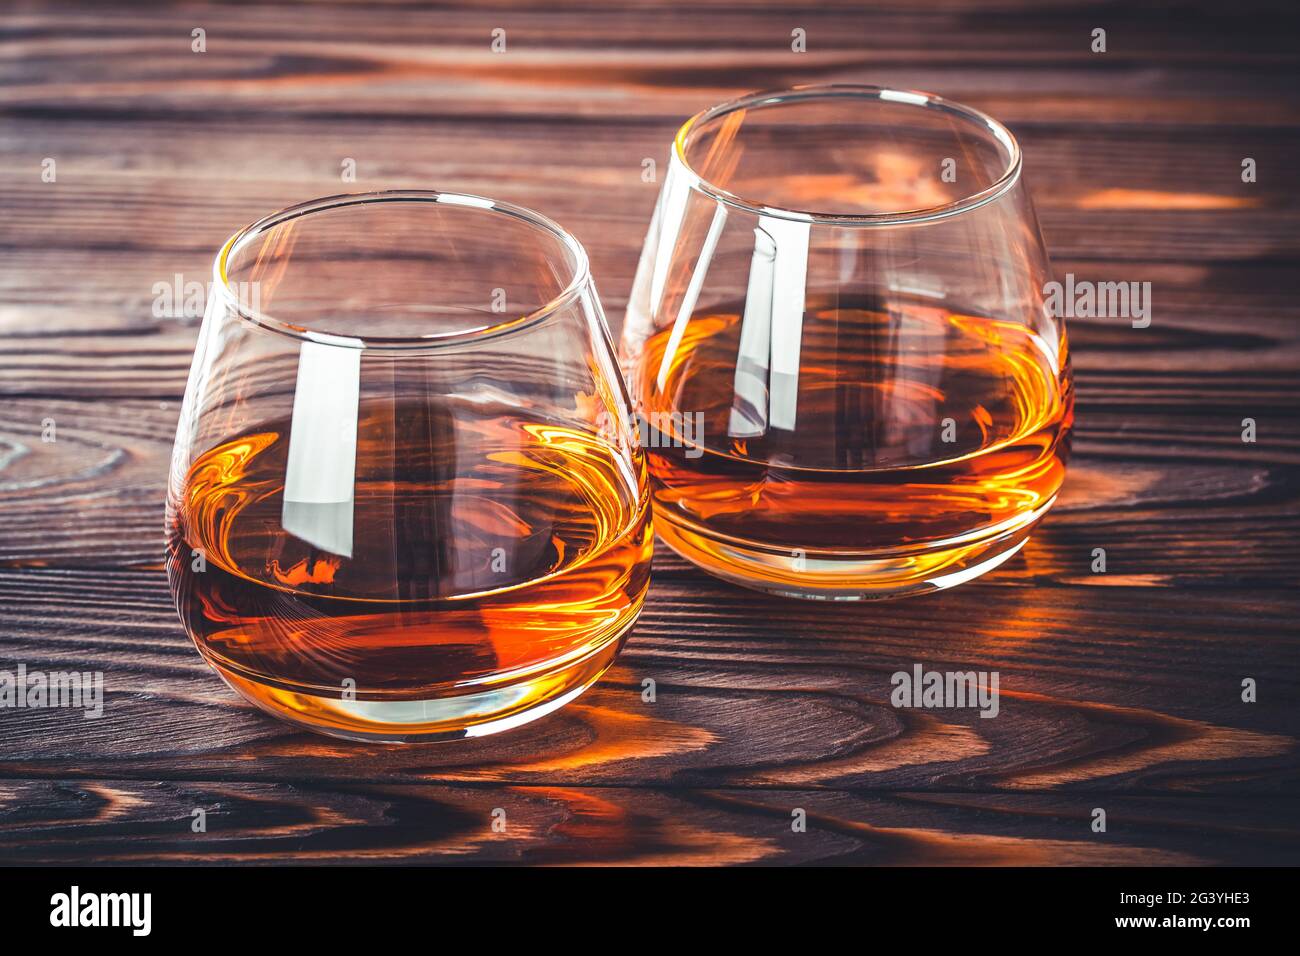 Zwei Gläser Whisky, Cognac, Brandy auf einem dunkelbraunen Holztisch.  Bourbon. Starker Alkoholkonsum aus nächster Nähe. Rum, Scotch. Stillleben  im rustikalen Stil Stockfotografie - Alamy